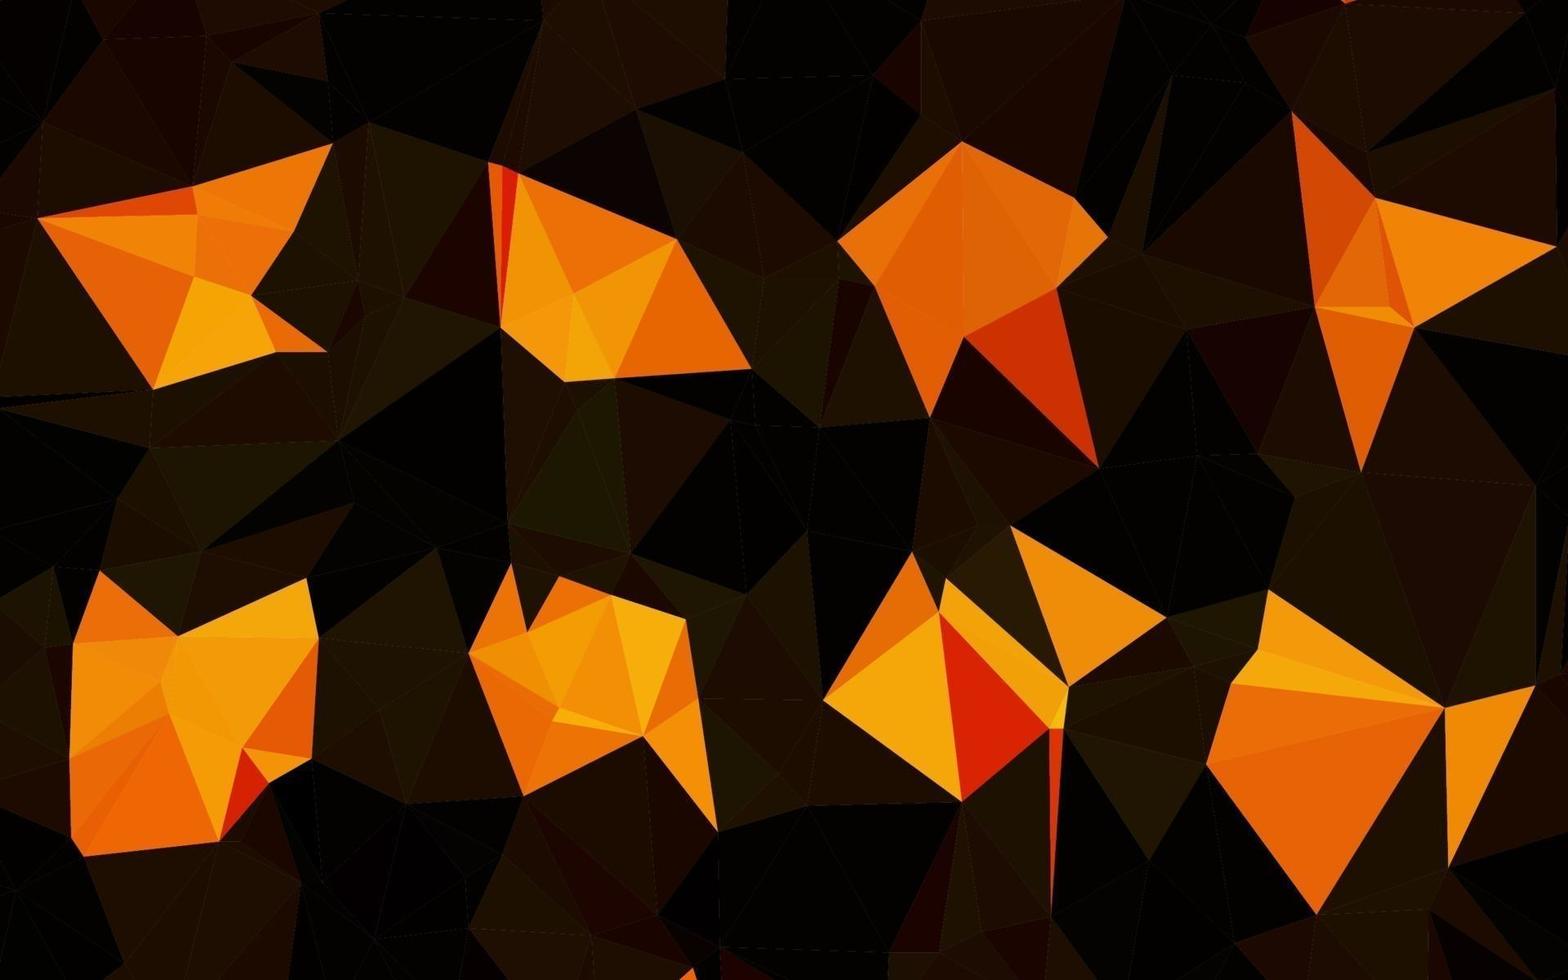 mise en page abstraite de polygone vecteur orange clair.